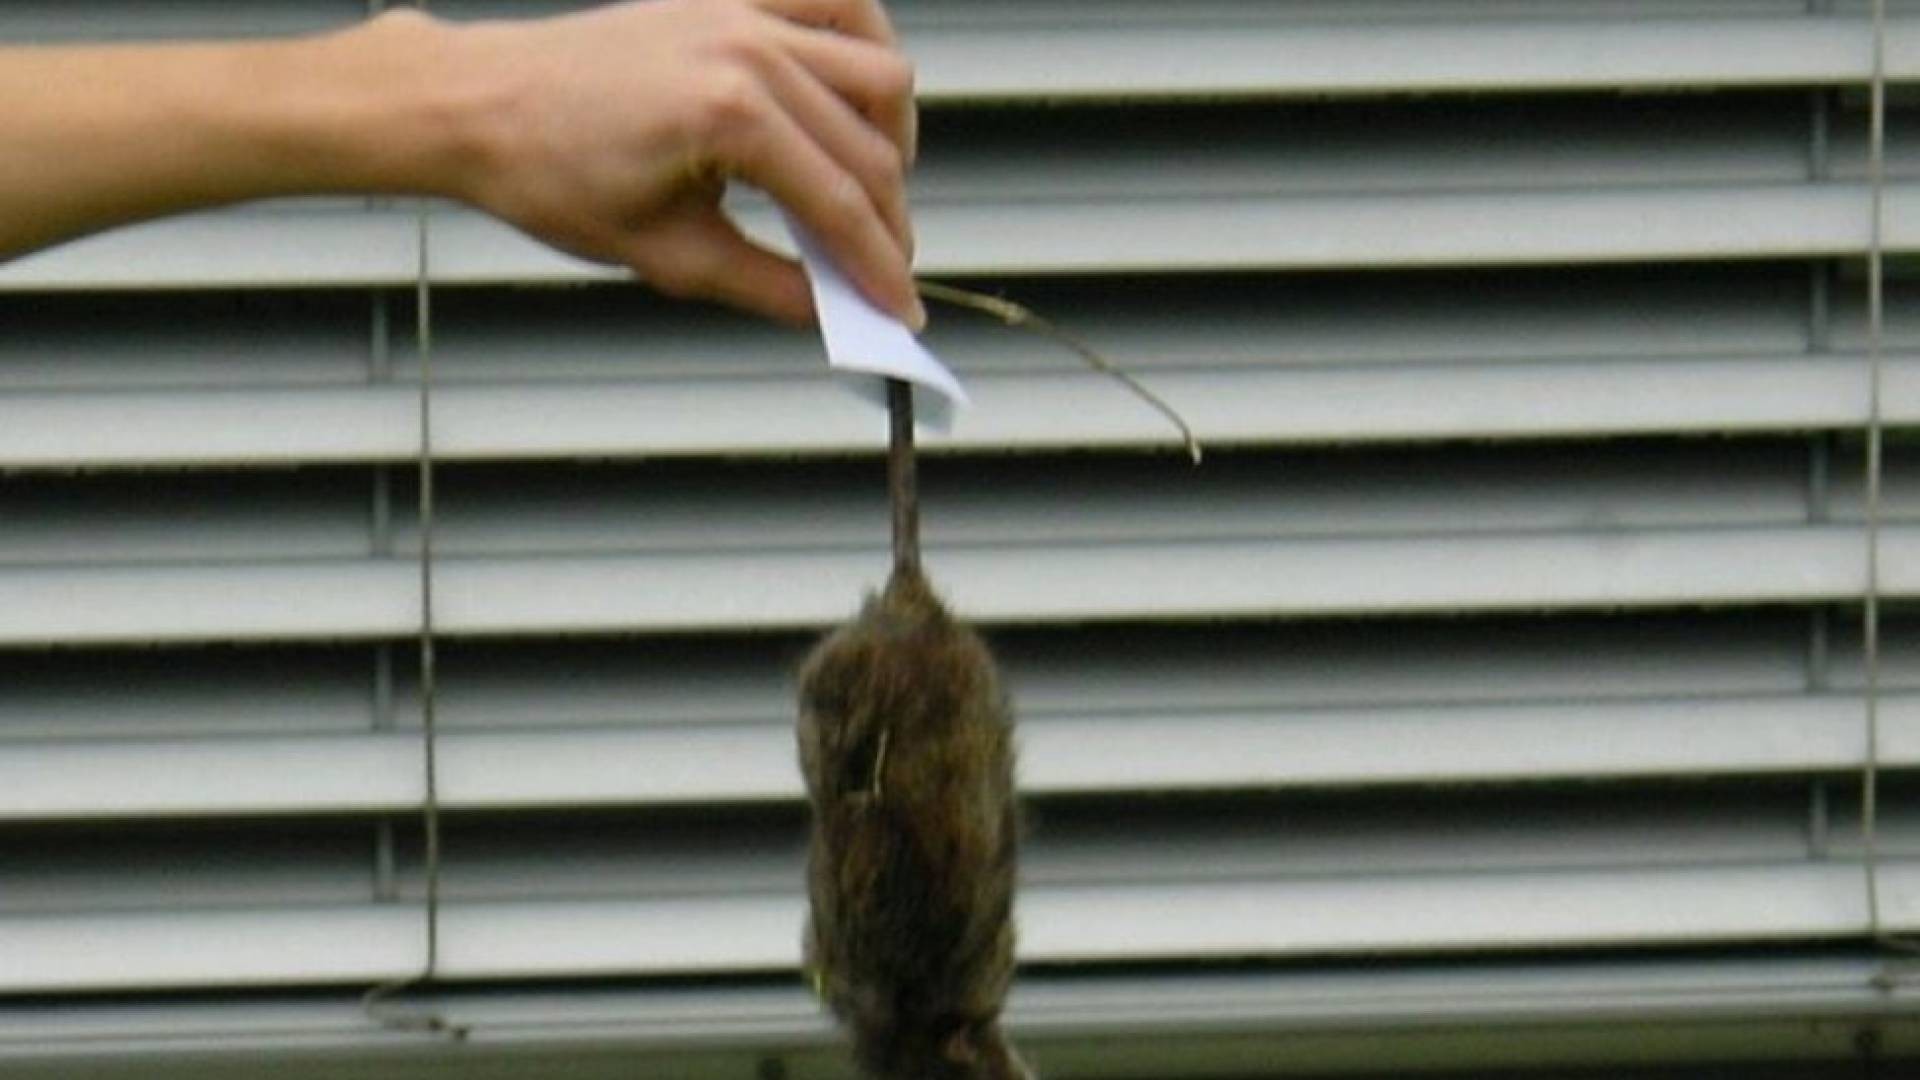 Sicilia: topo morto in un contenitore per alimenti ed escrementi a terra,  sequestrato locale